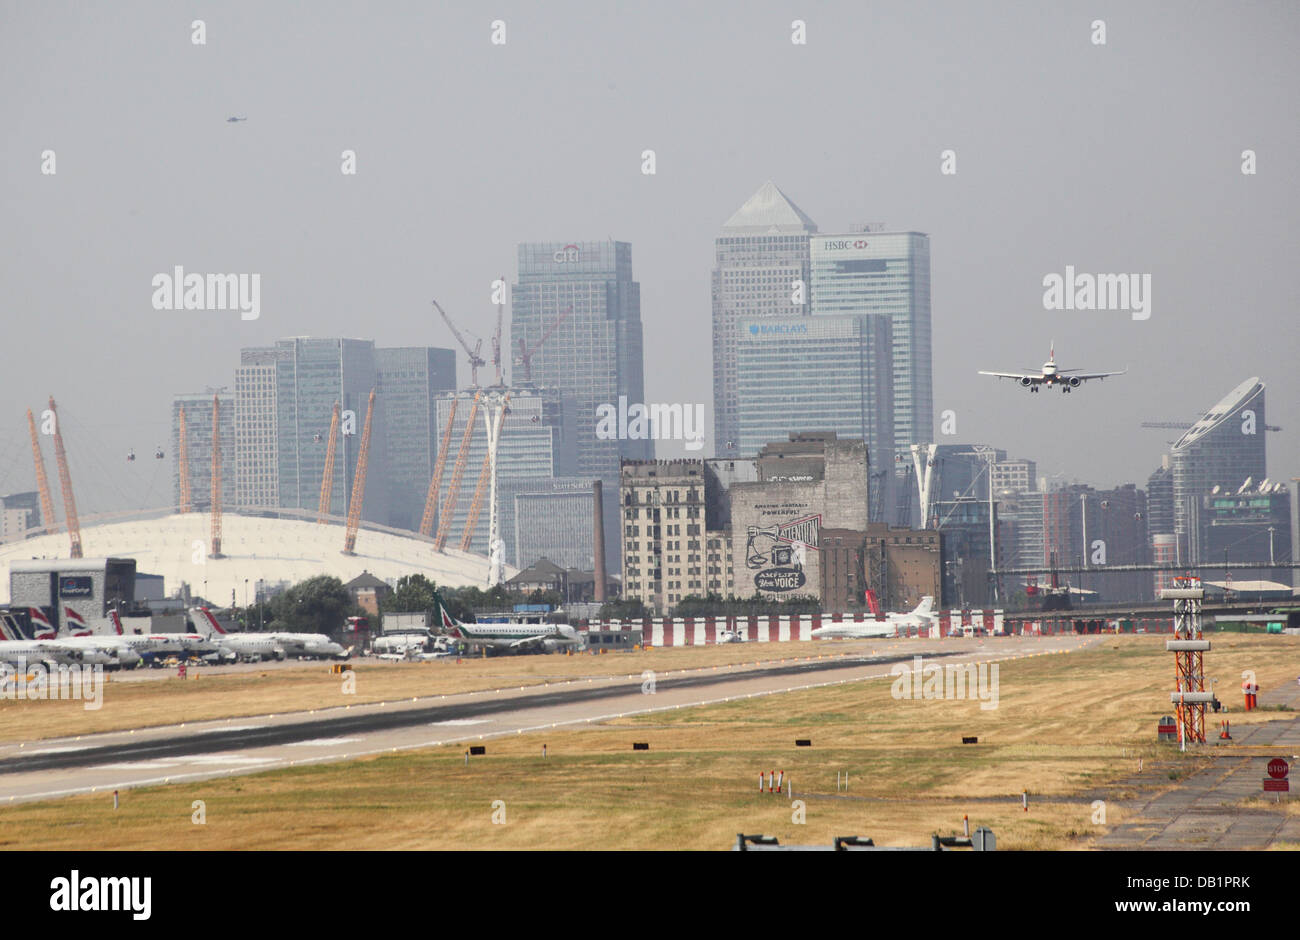 Ein Passagier-Jet landet auf dem Flughafen London City. Canary Wharf und den Millennium Dome im Hintergrund Stockfoto